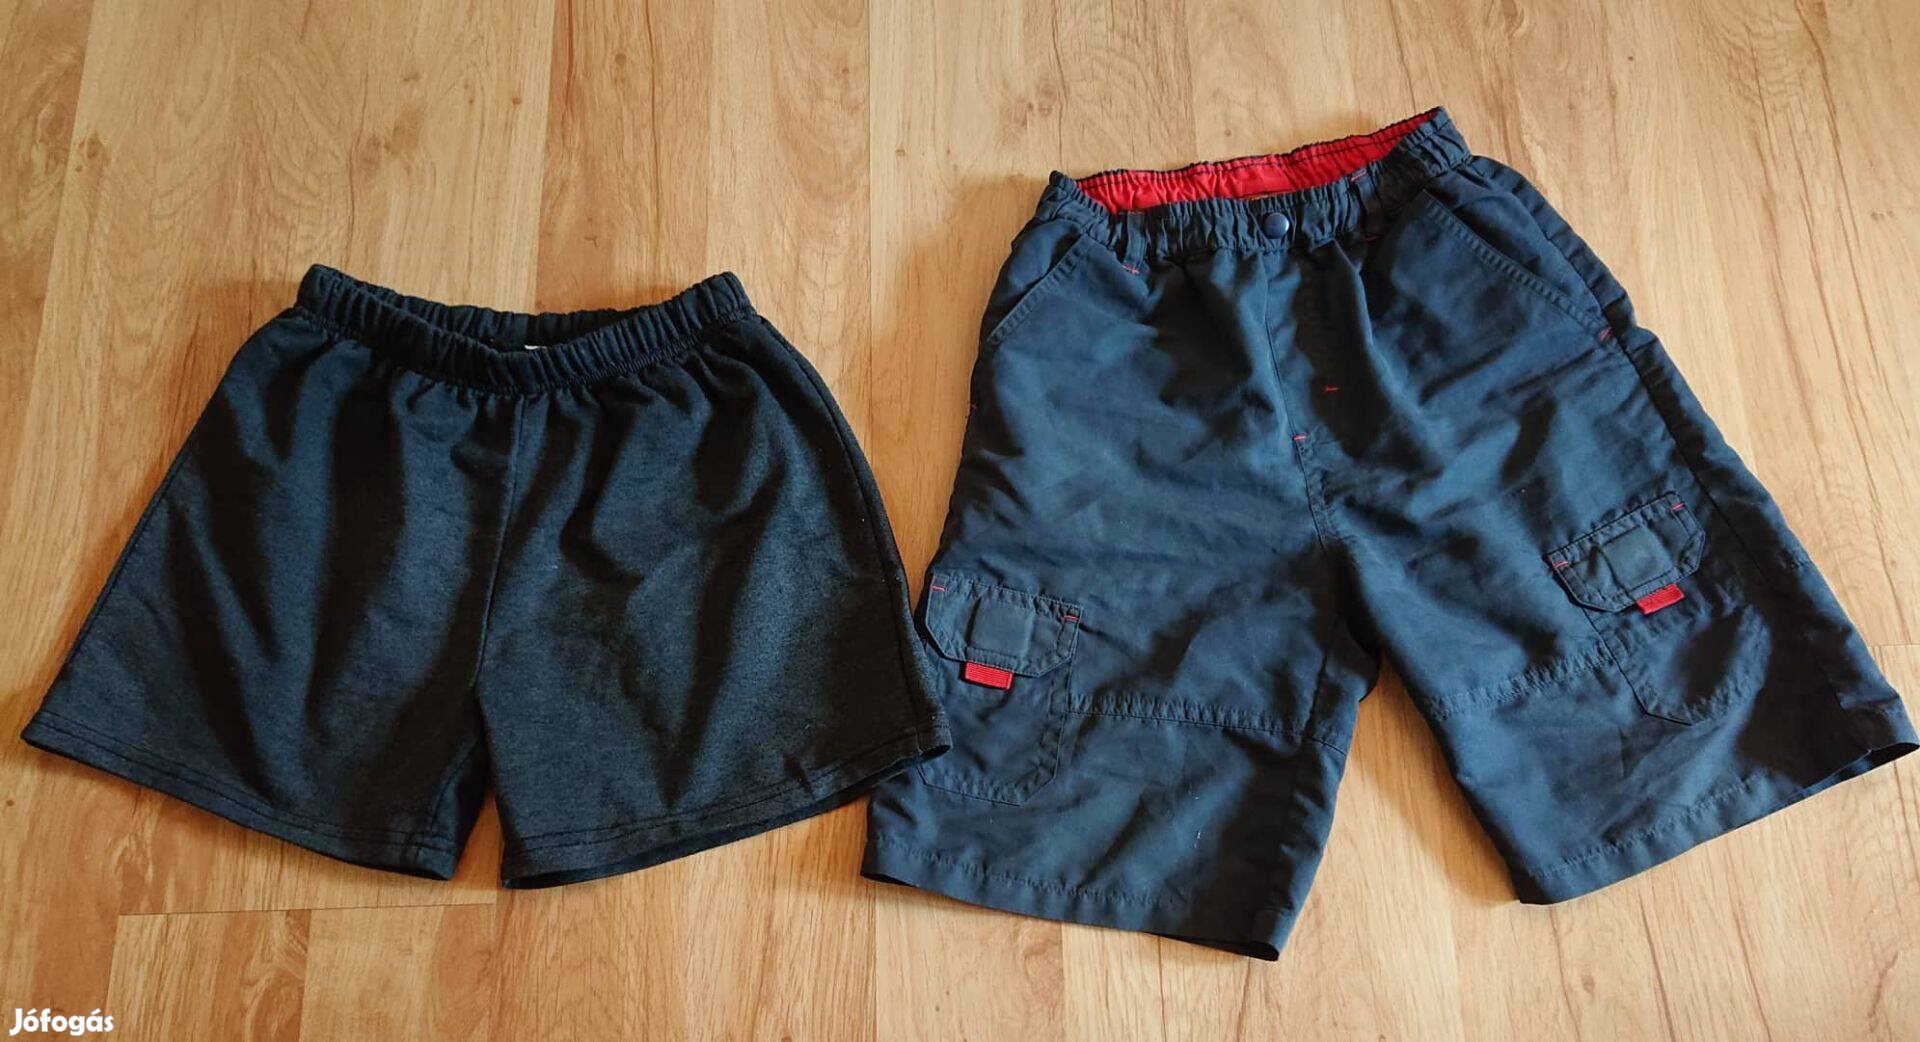 Két darab márkás rövidnadrág fiúnak kb. 6 évesnek